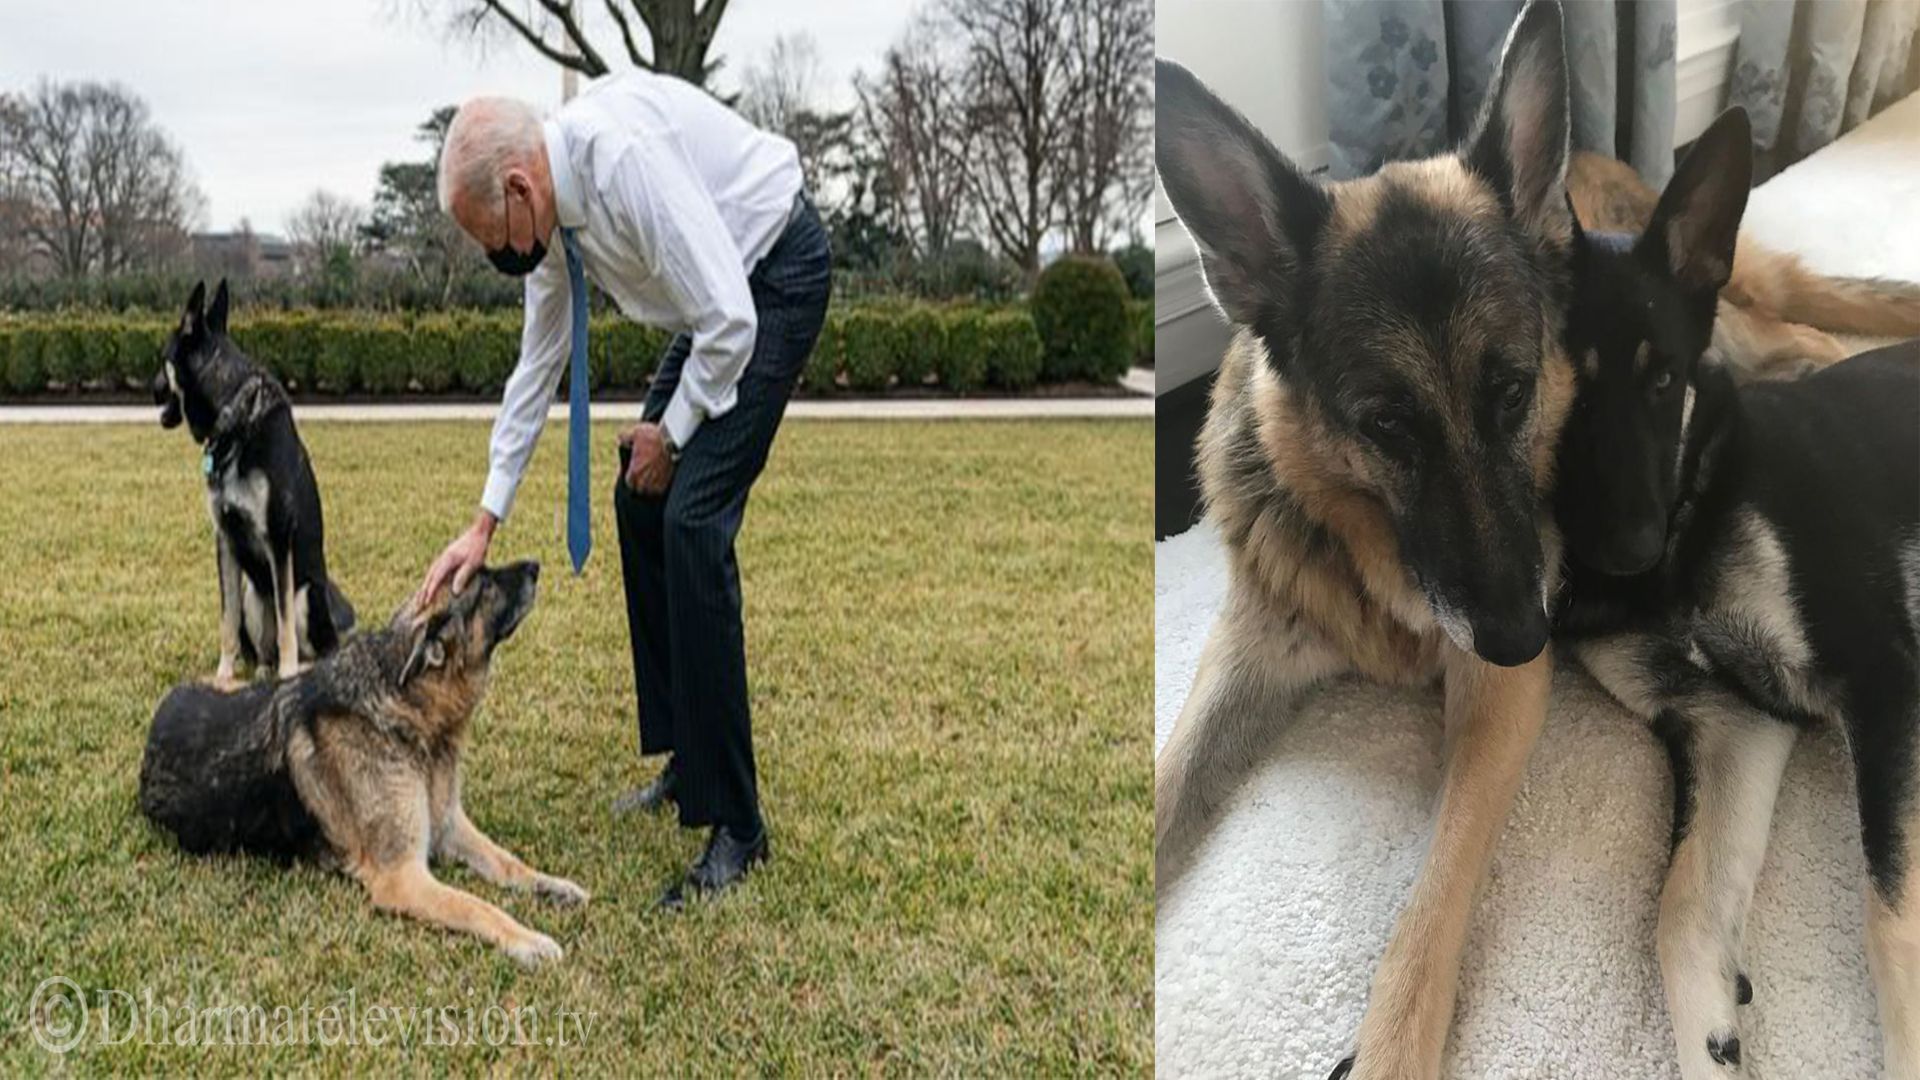 US President Biden's dog expelled from White House